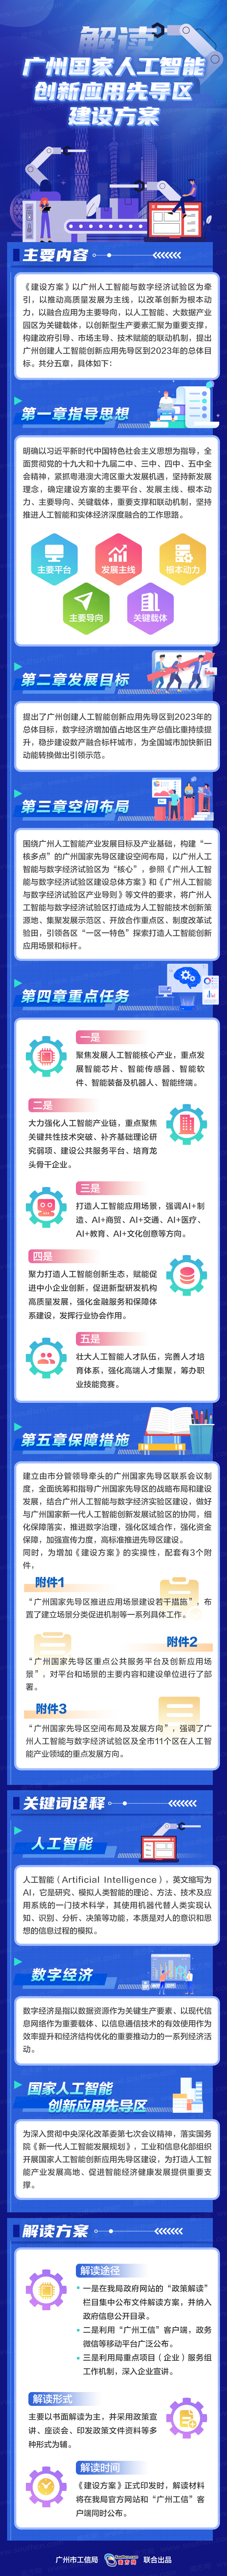 广州国家人工智能创新应用先导区建设方案.jpg